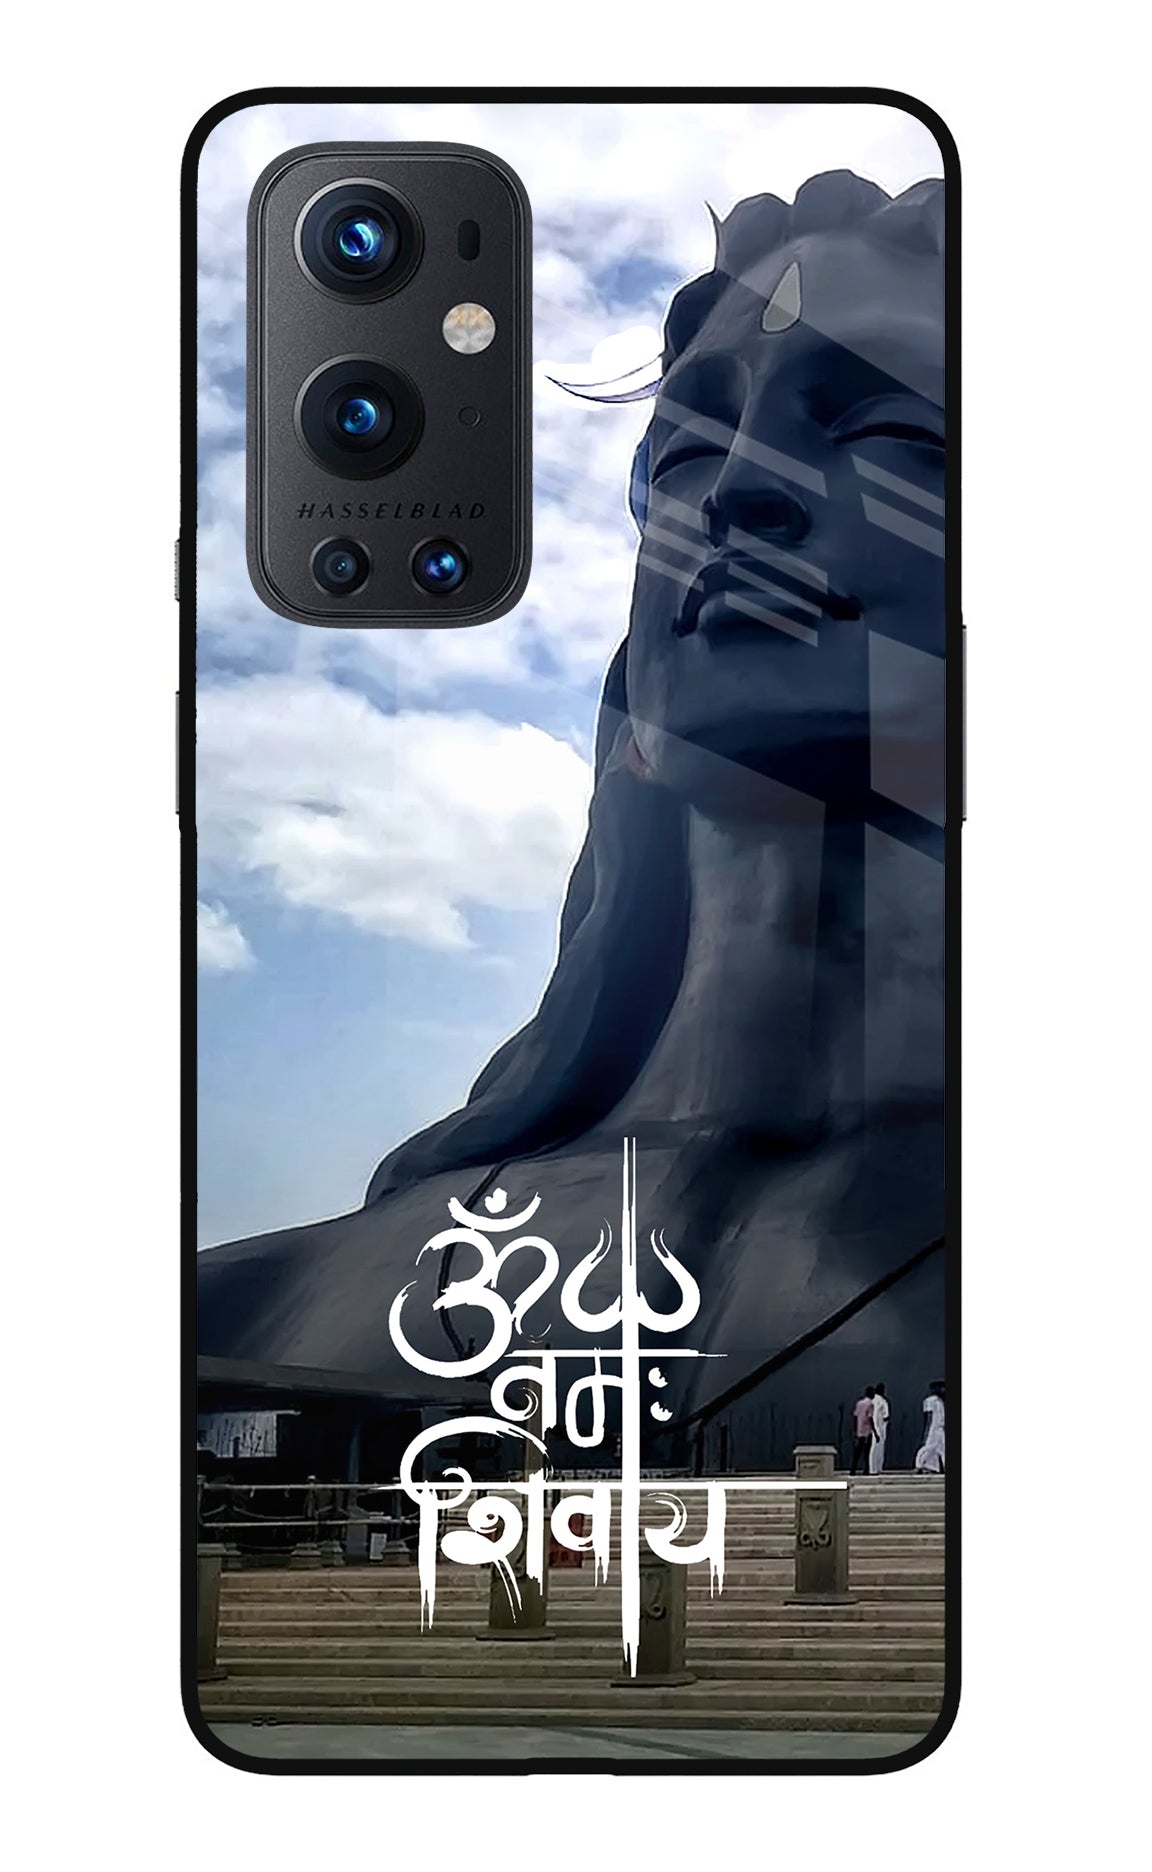 Om Namah Shivay Oneplus 9 Pro Back Cover